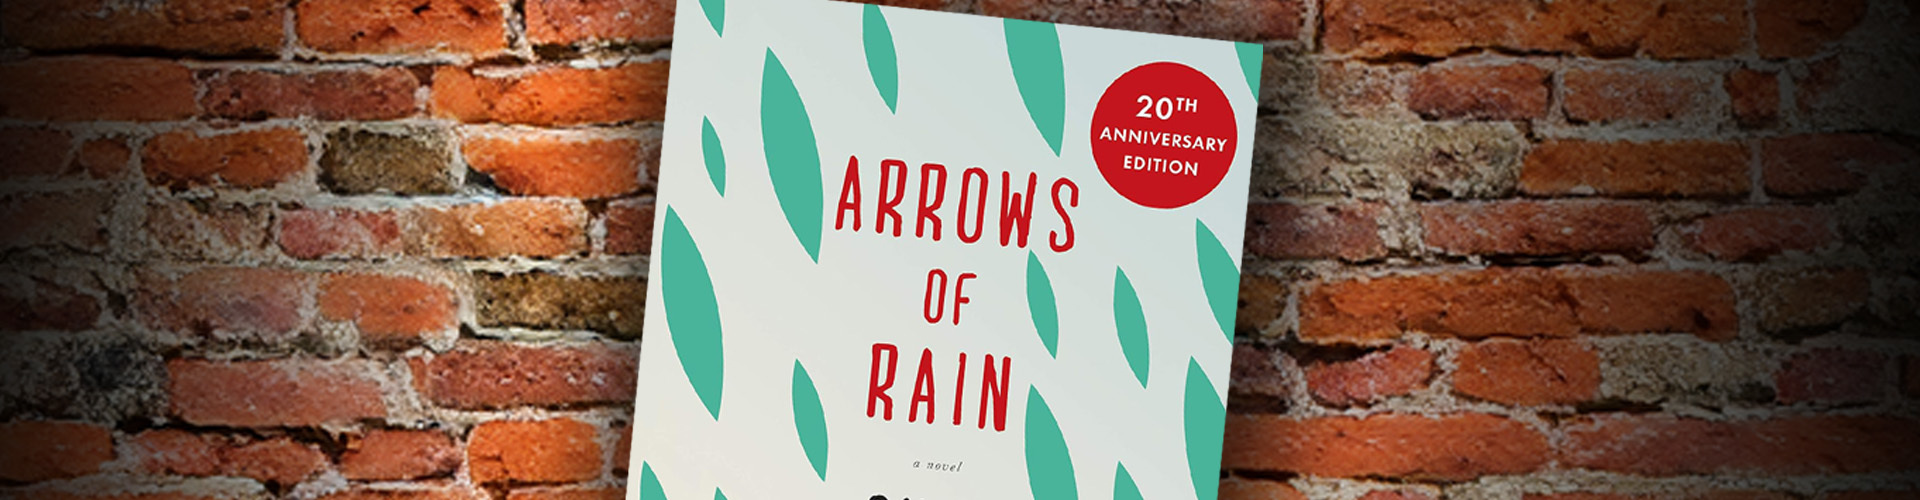 arrows of rain